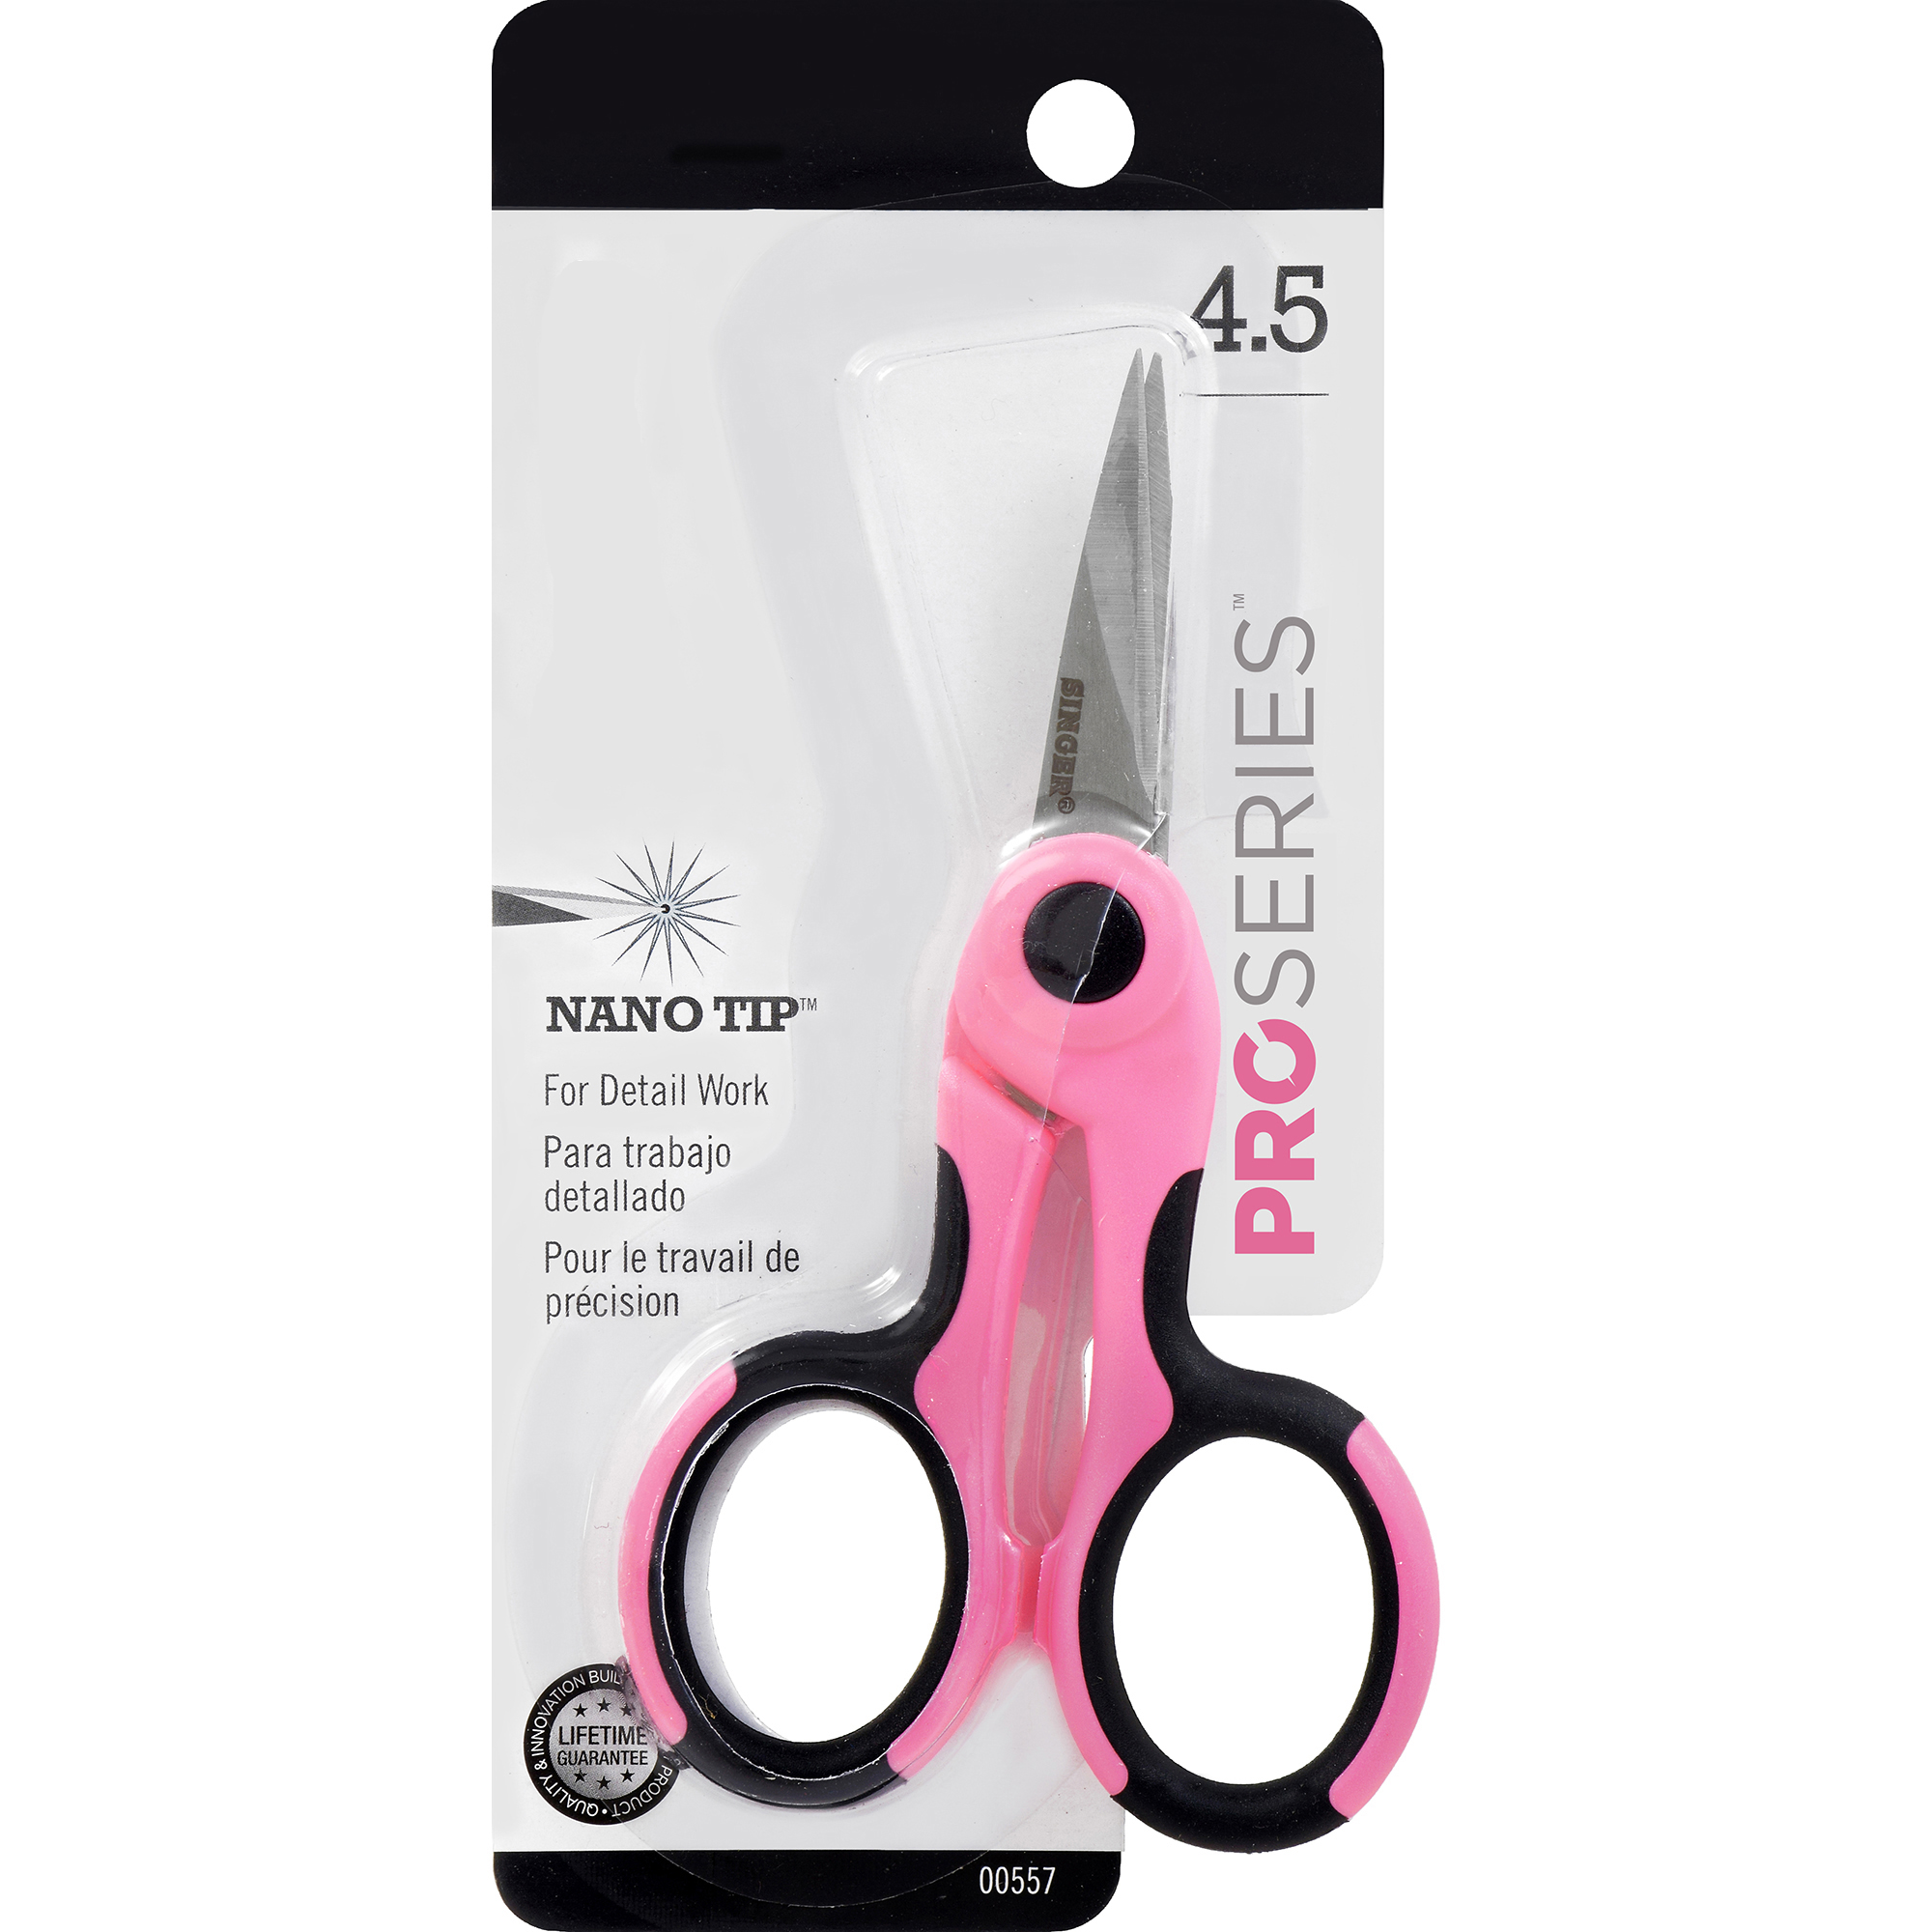 4.5" ProSeries Scissors